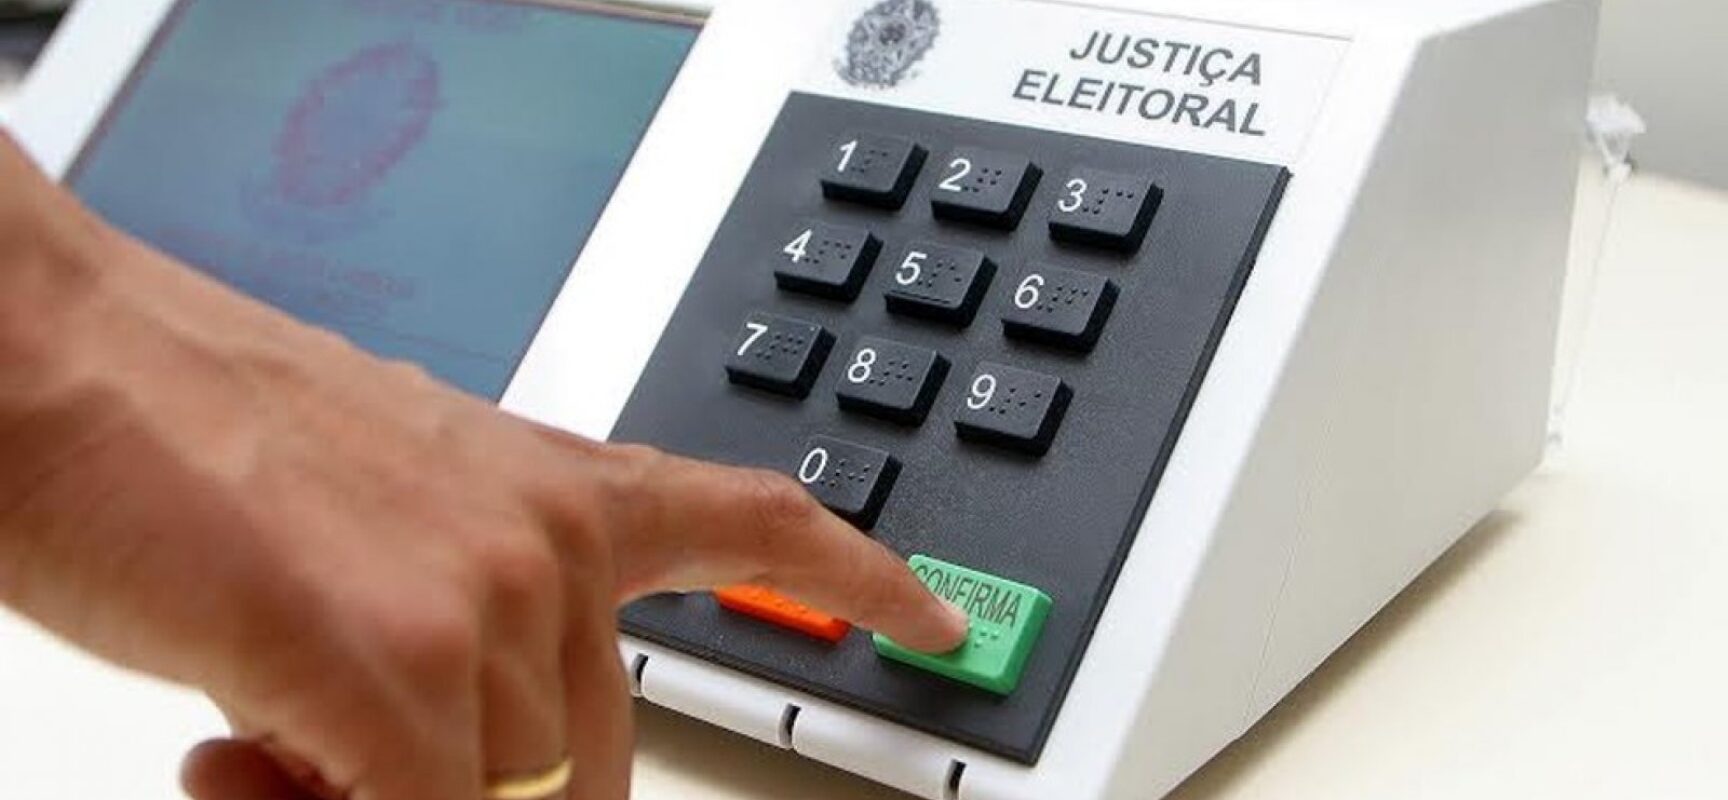 Justiça Eleitoral vai apoiar eleição para Conselho Tutelar em todo o território nacional